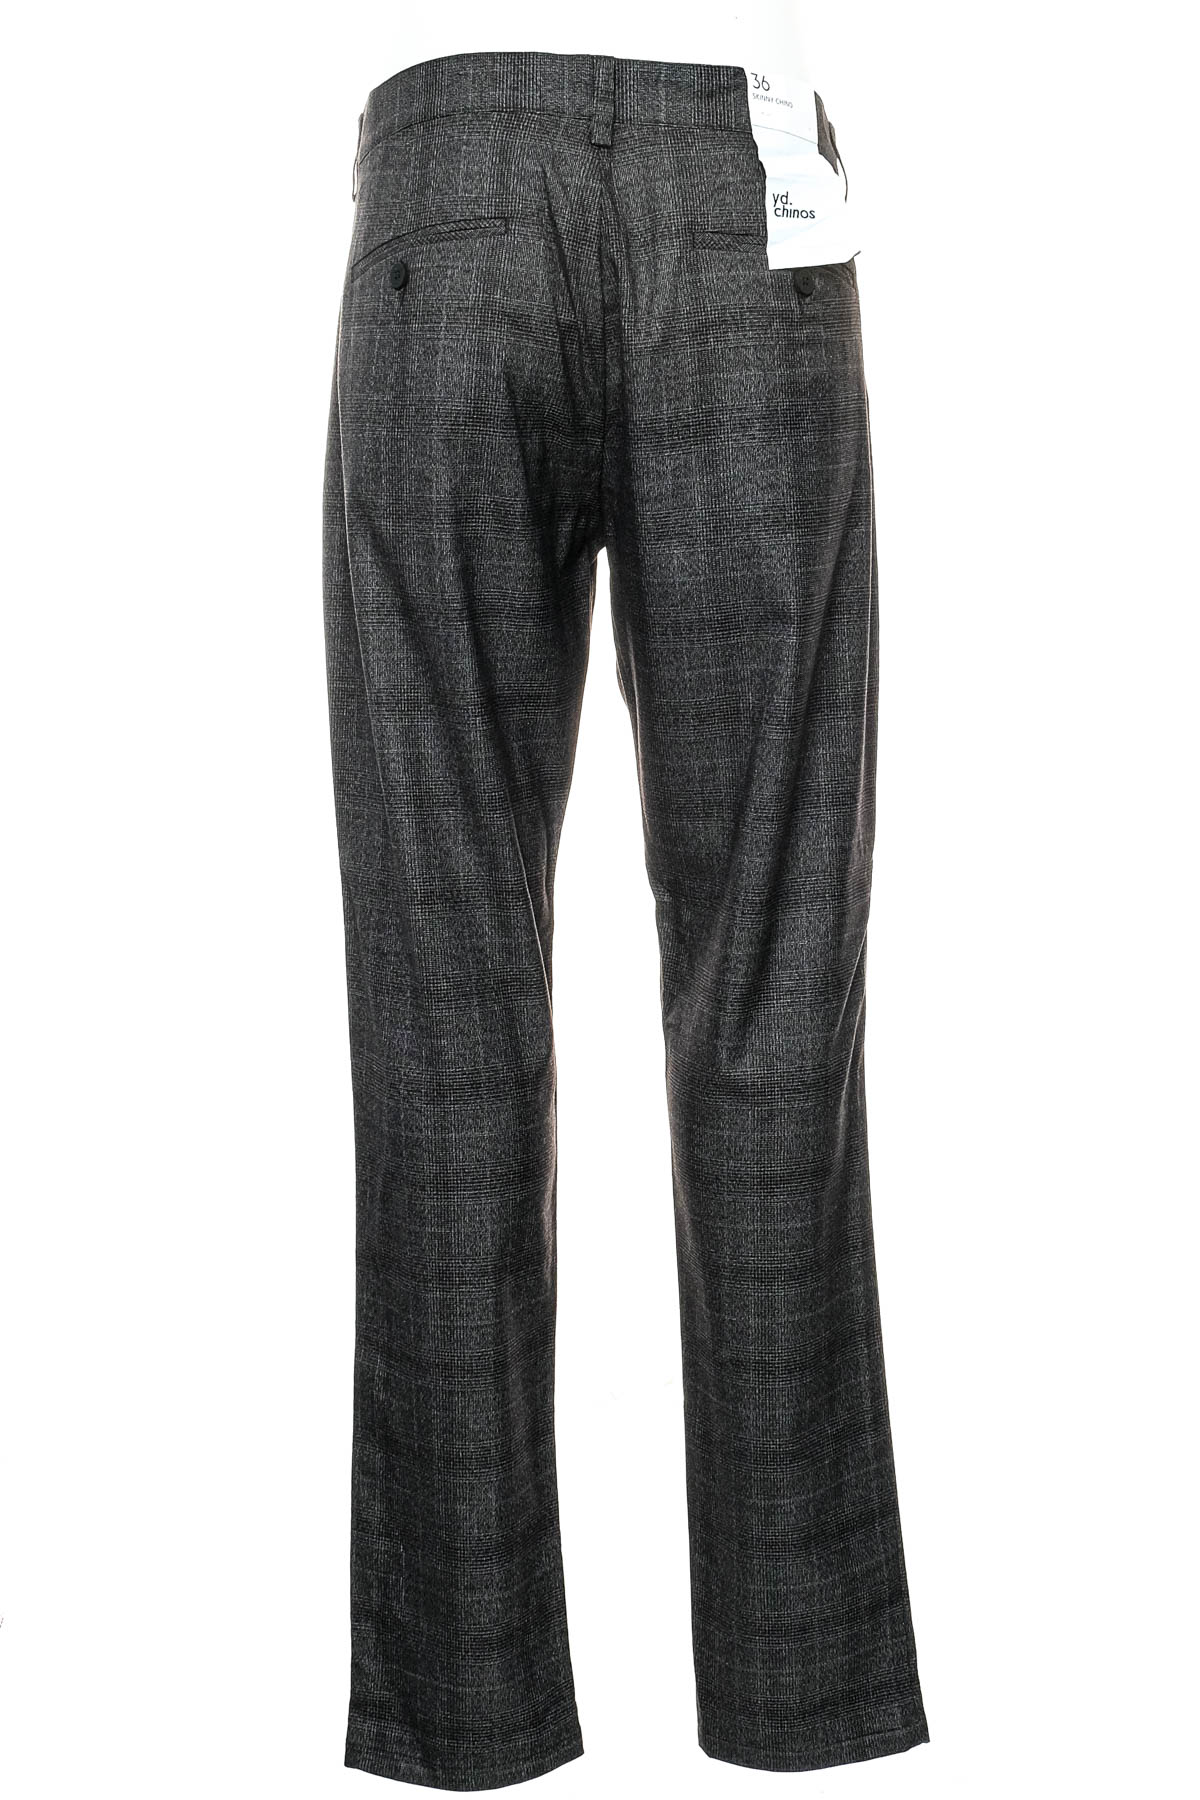 Men's trousers - YD - 1